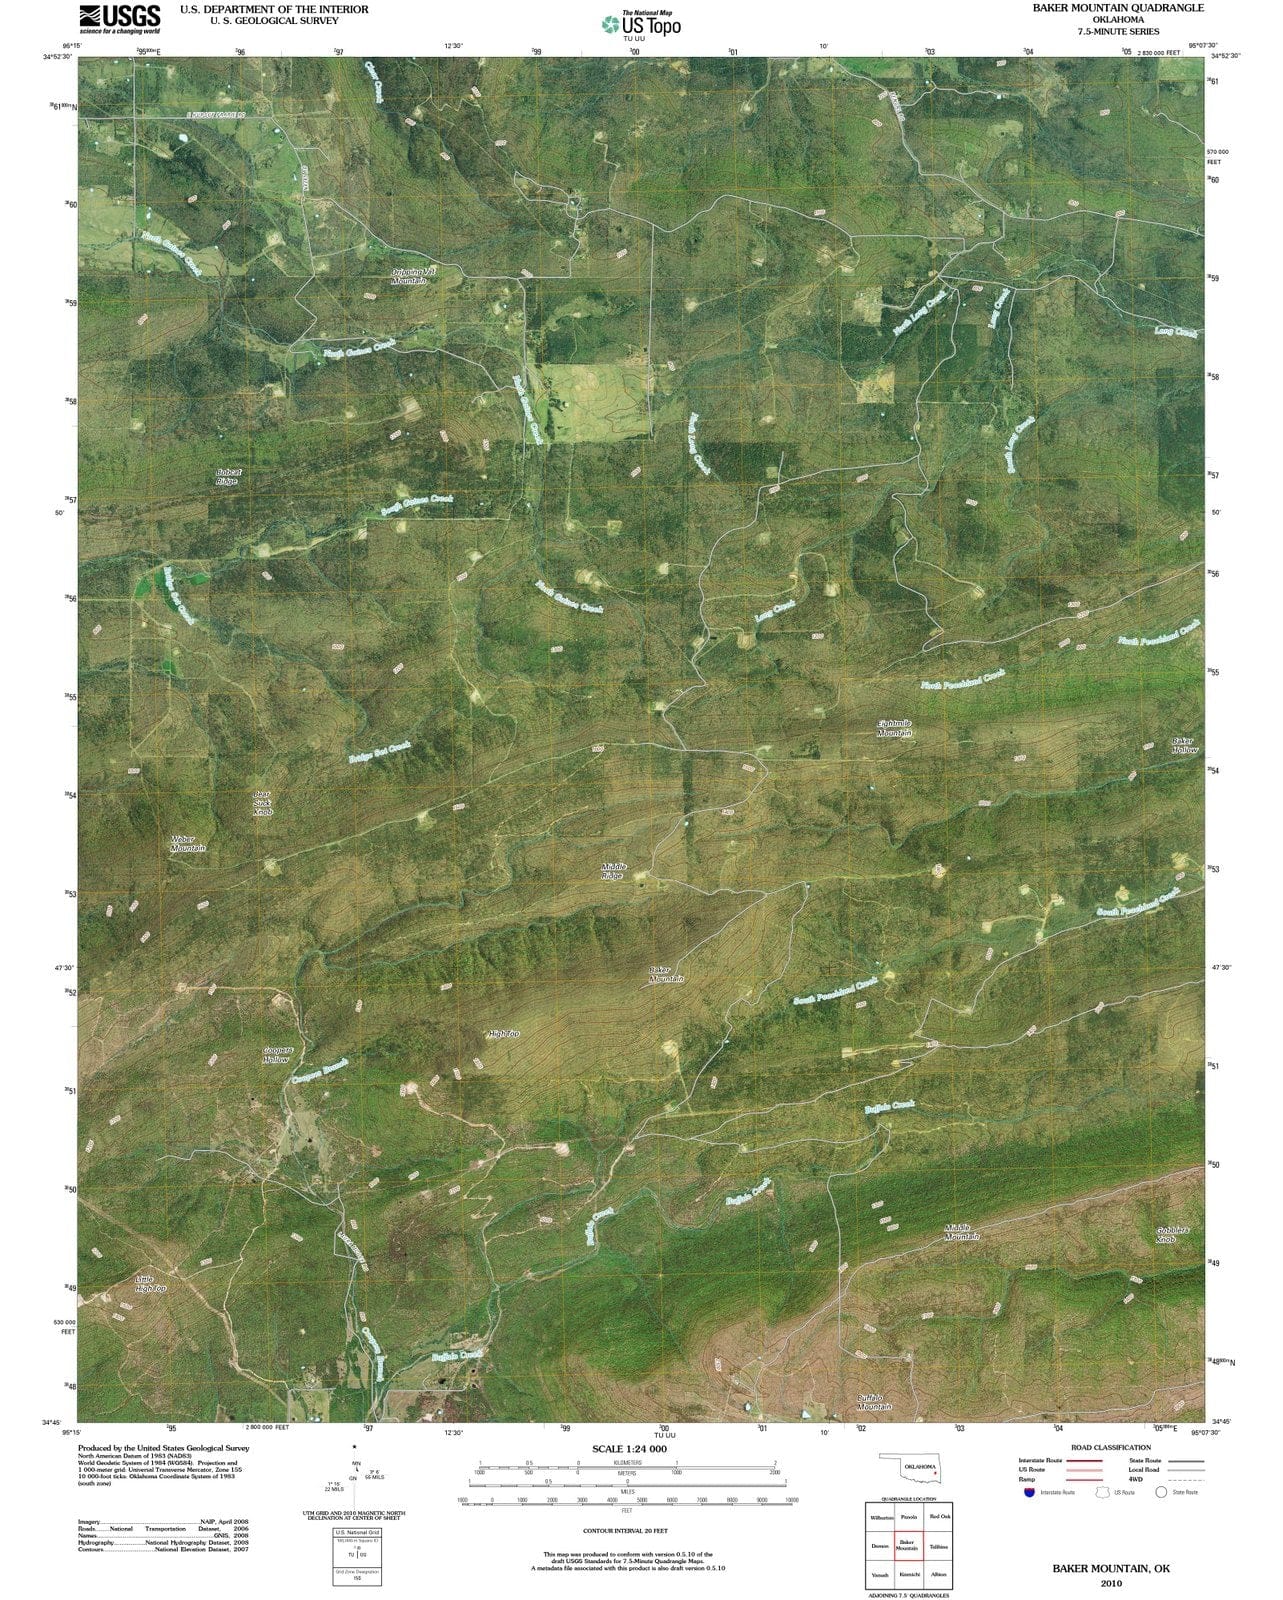 2010 Baker Mountain, OK - Oklahoma - USGS Topographic Map